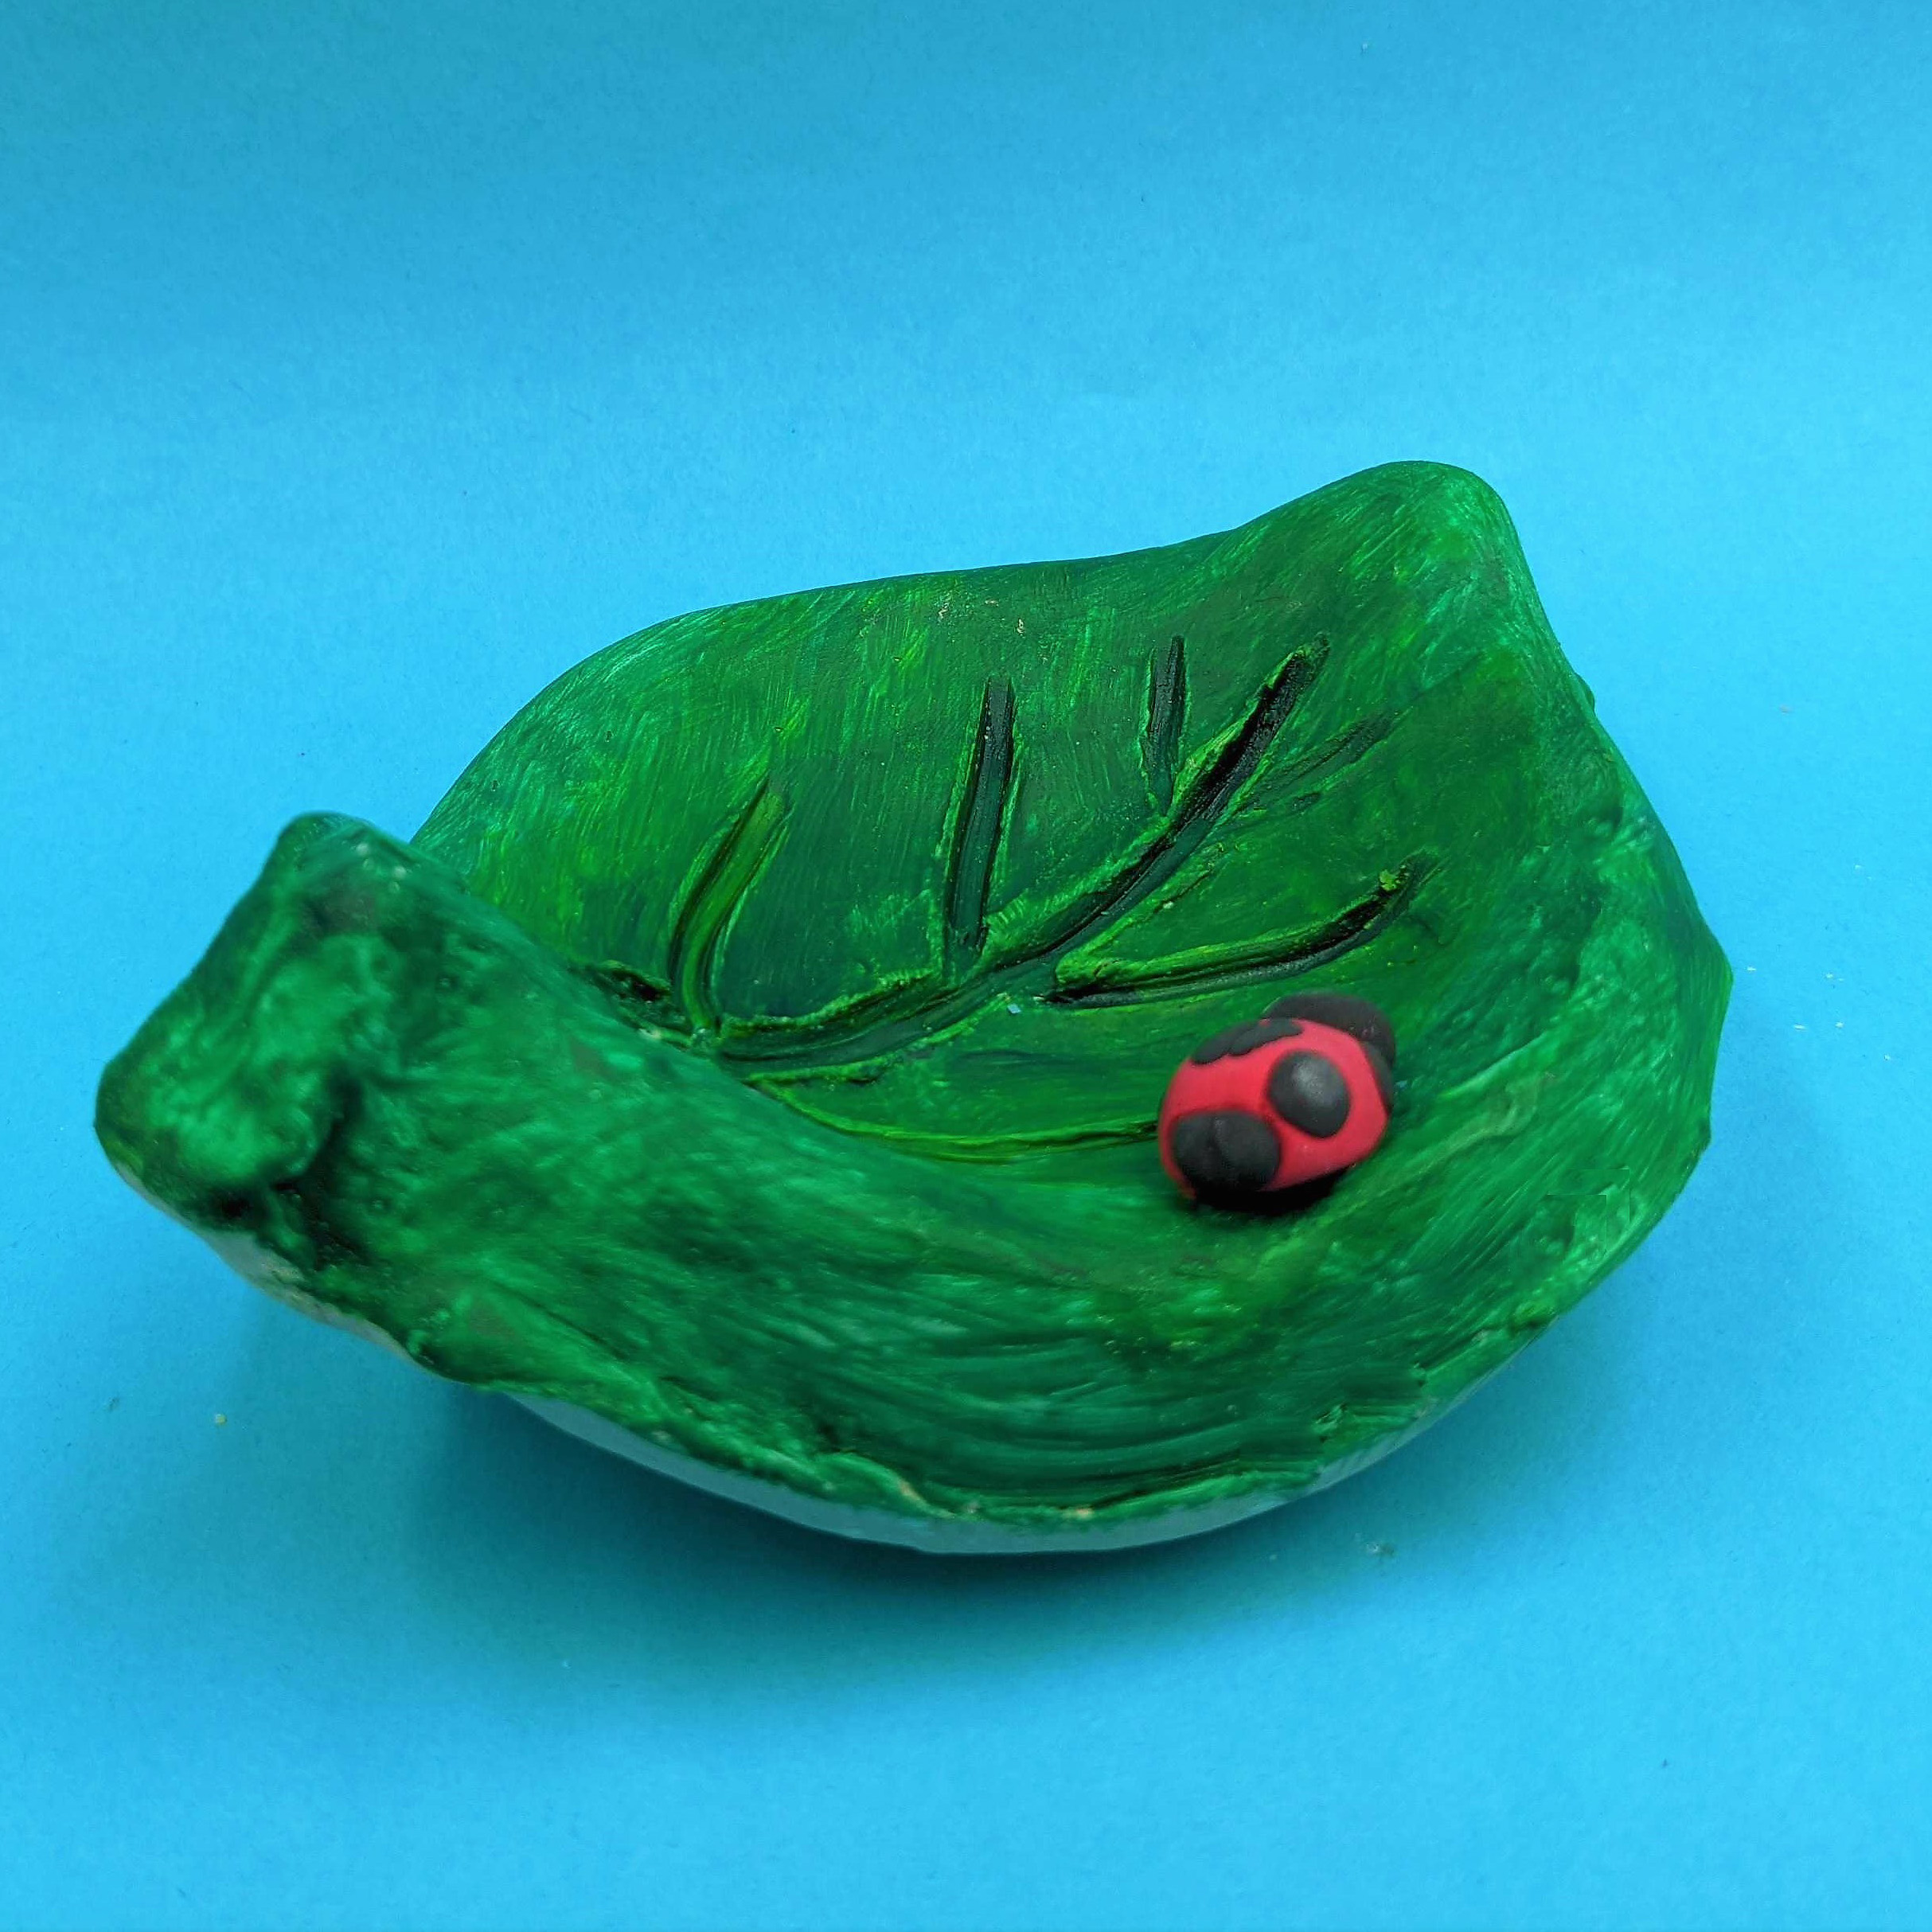 Kidcreate Studio - Broomfield, Leaf bowl Art Project